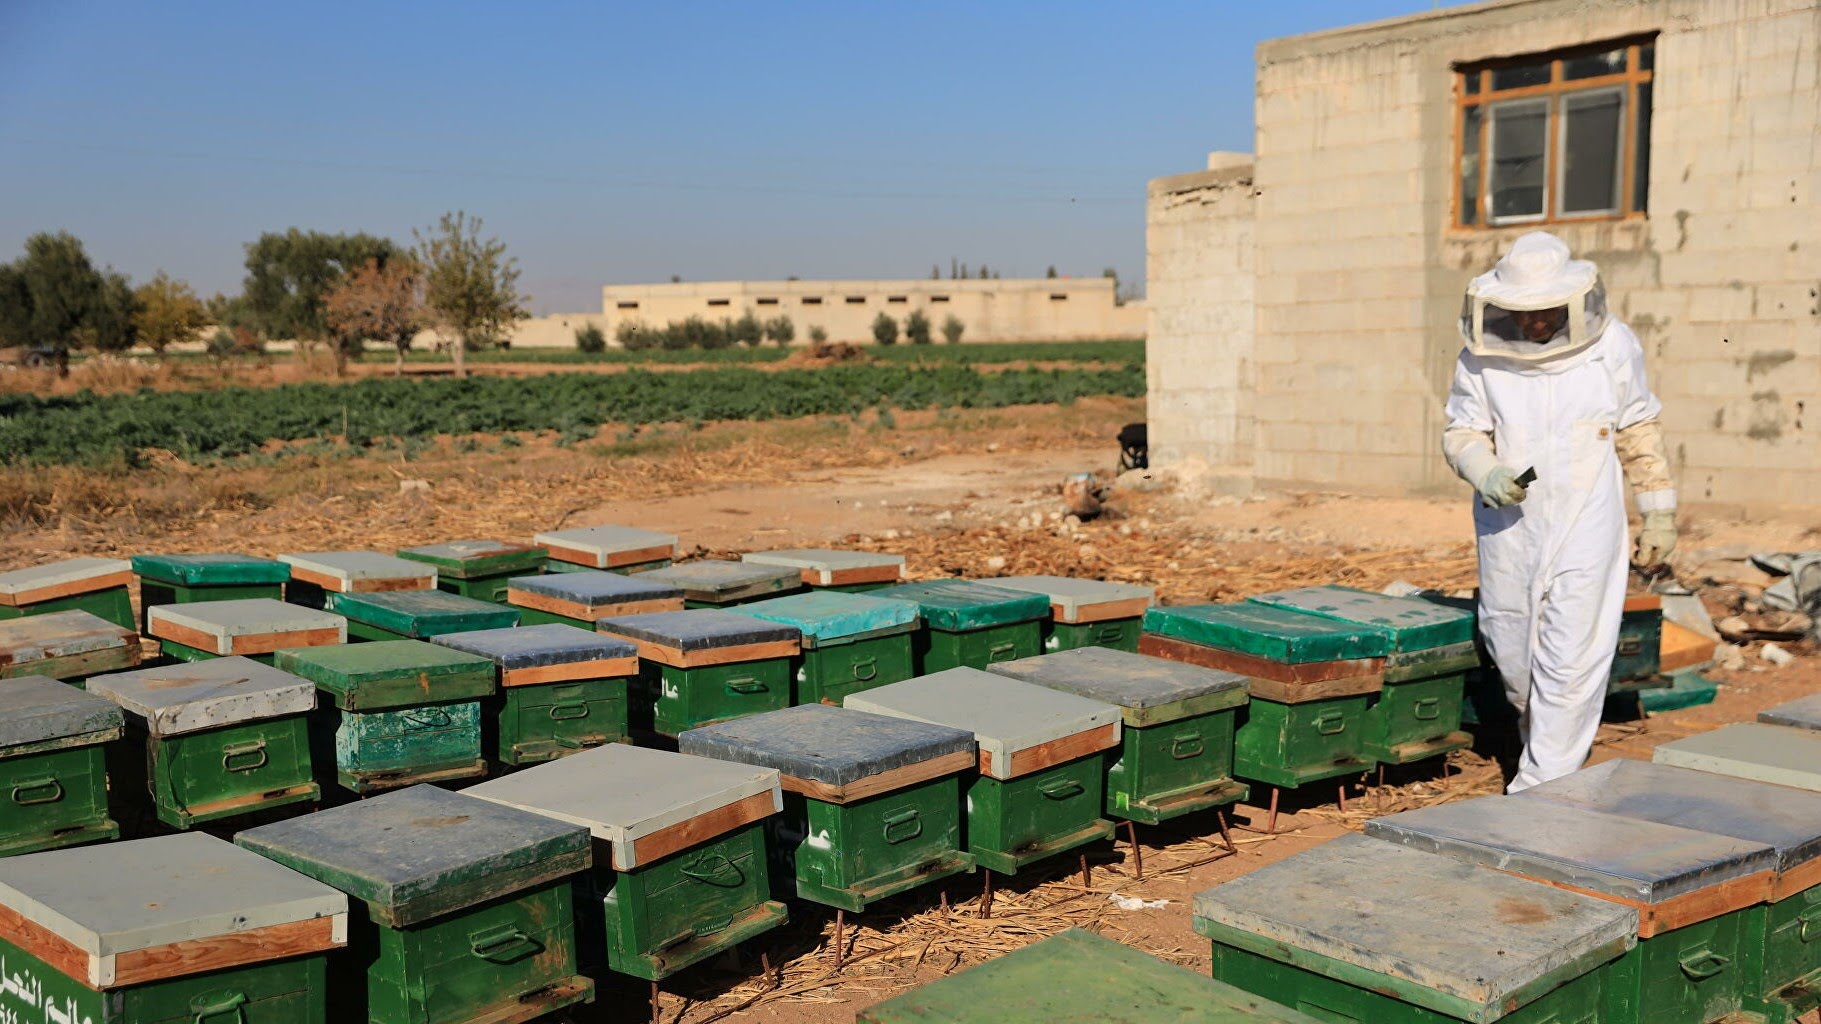 تحسن ملحوظ في إنتاج العسل السوري واتفاقيات لتصديره إلى الإمارات والعراق والأردن ولبنان